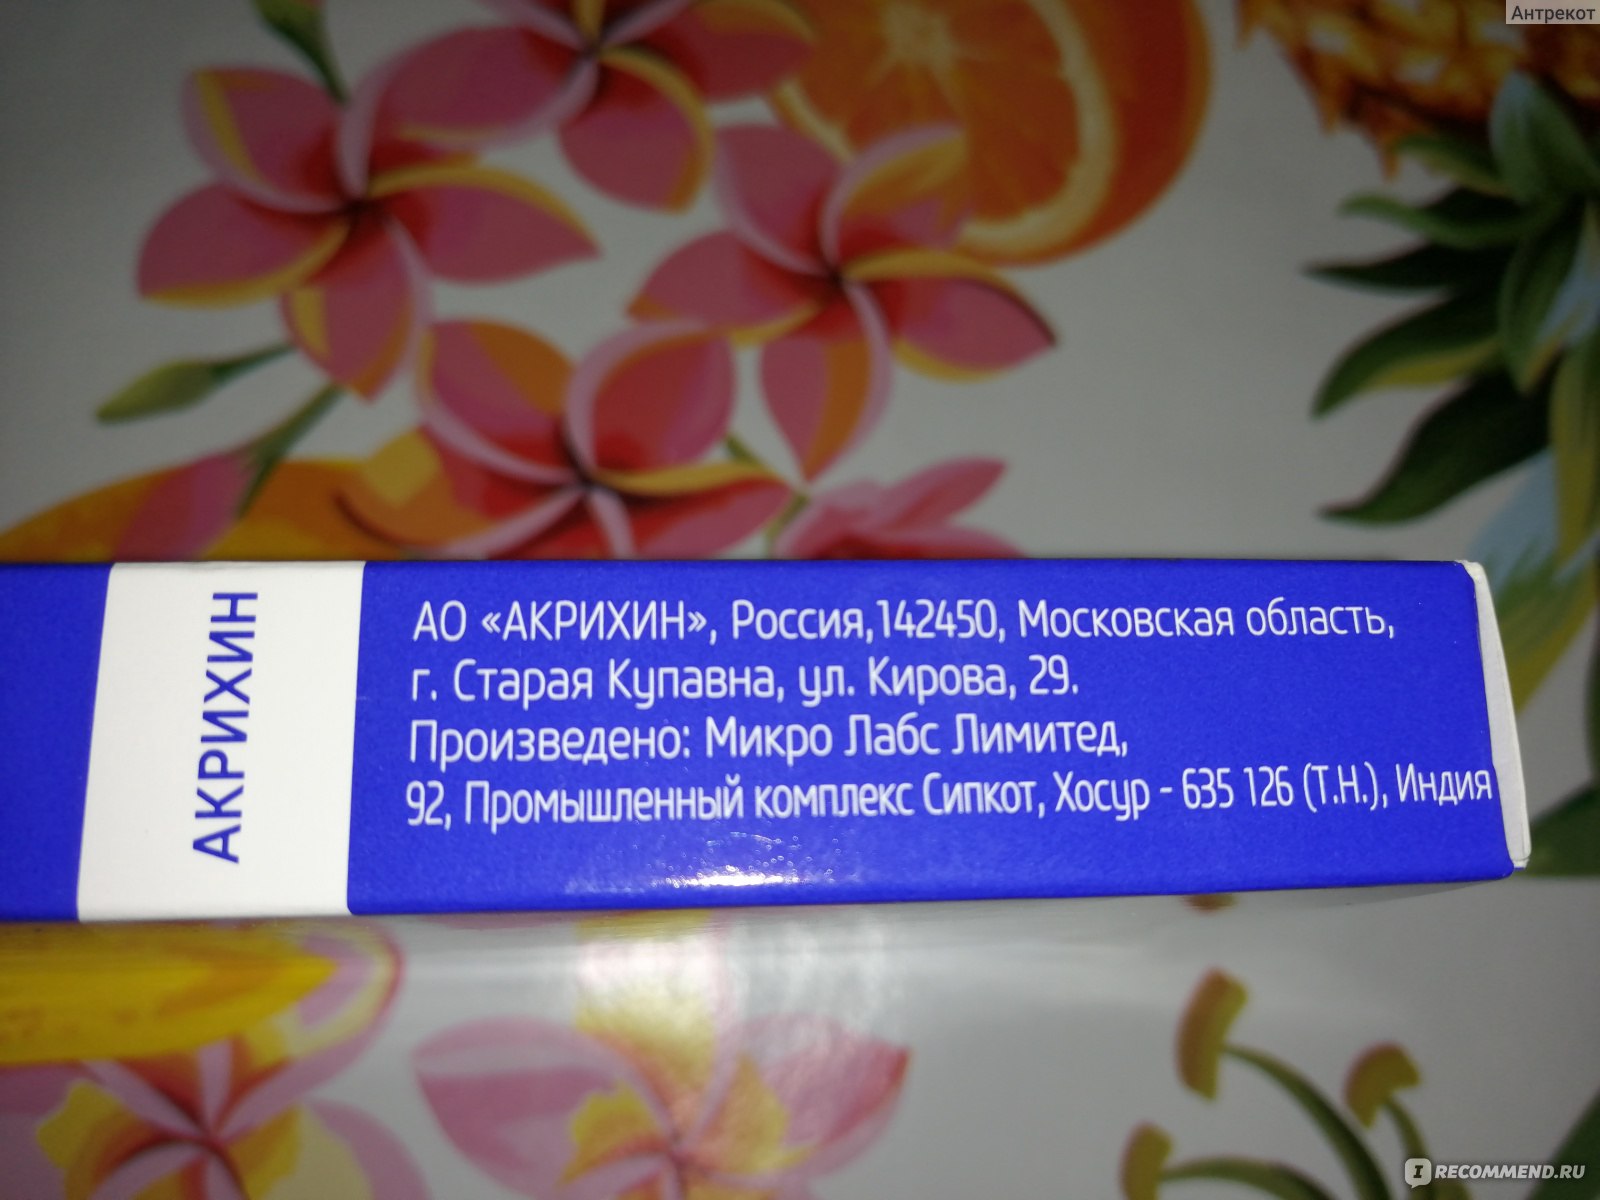 Таблетки кларитромицин акрихин